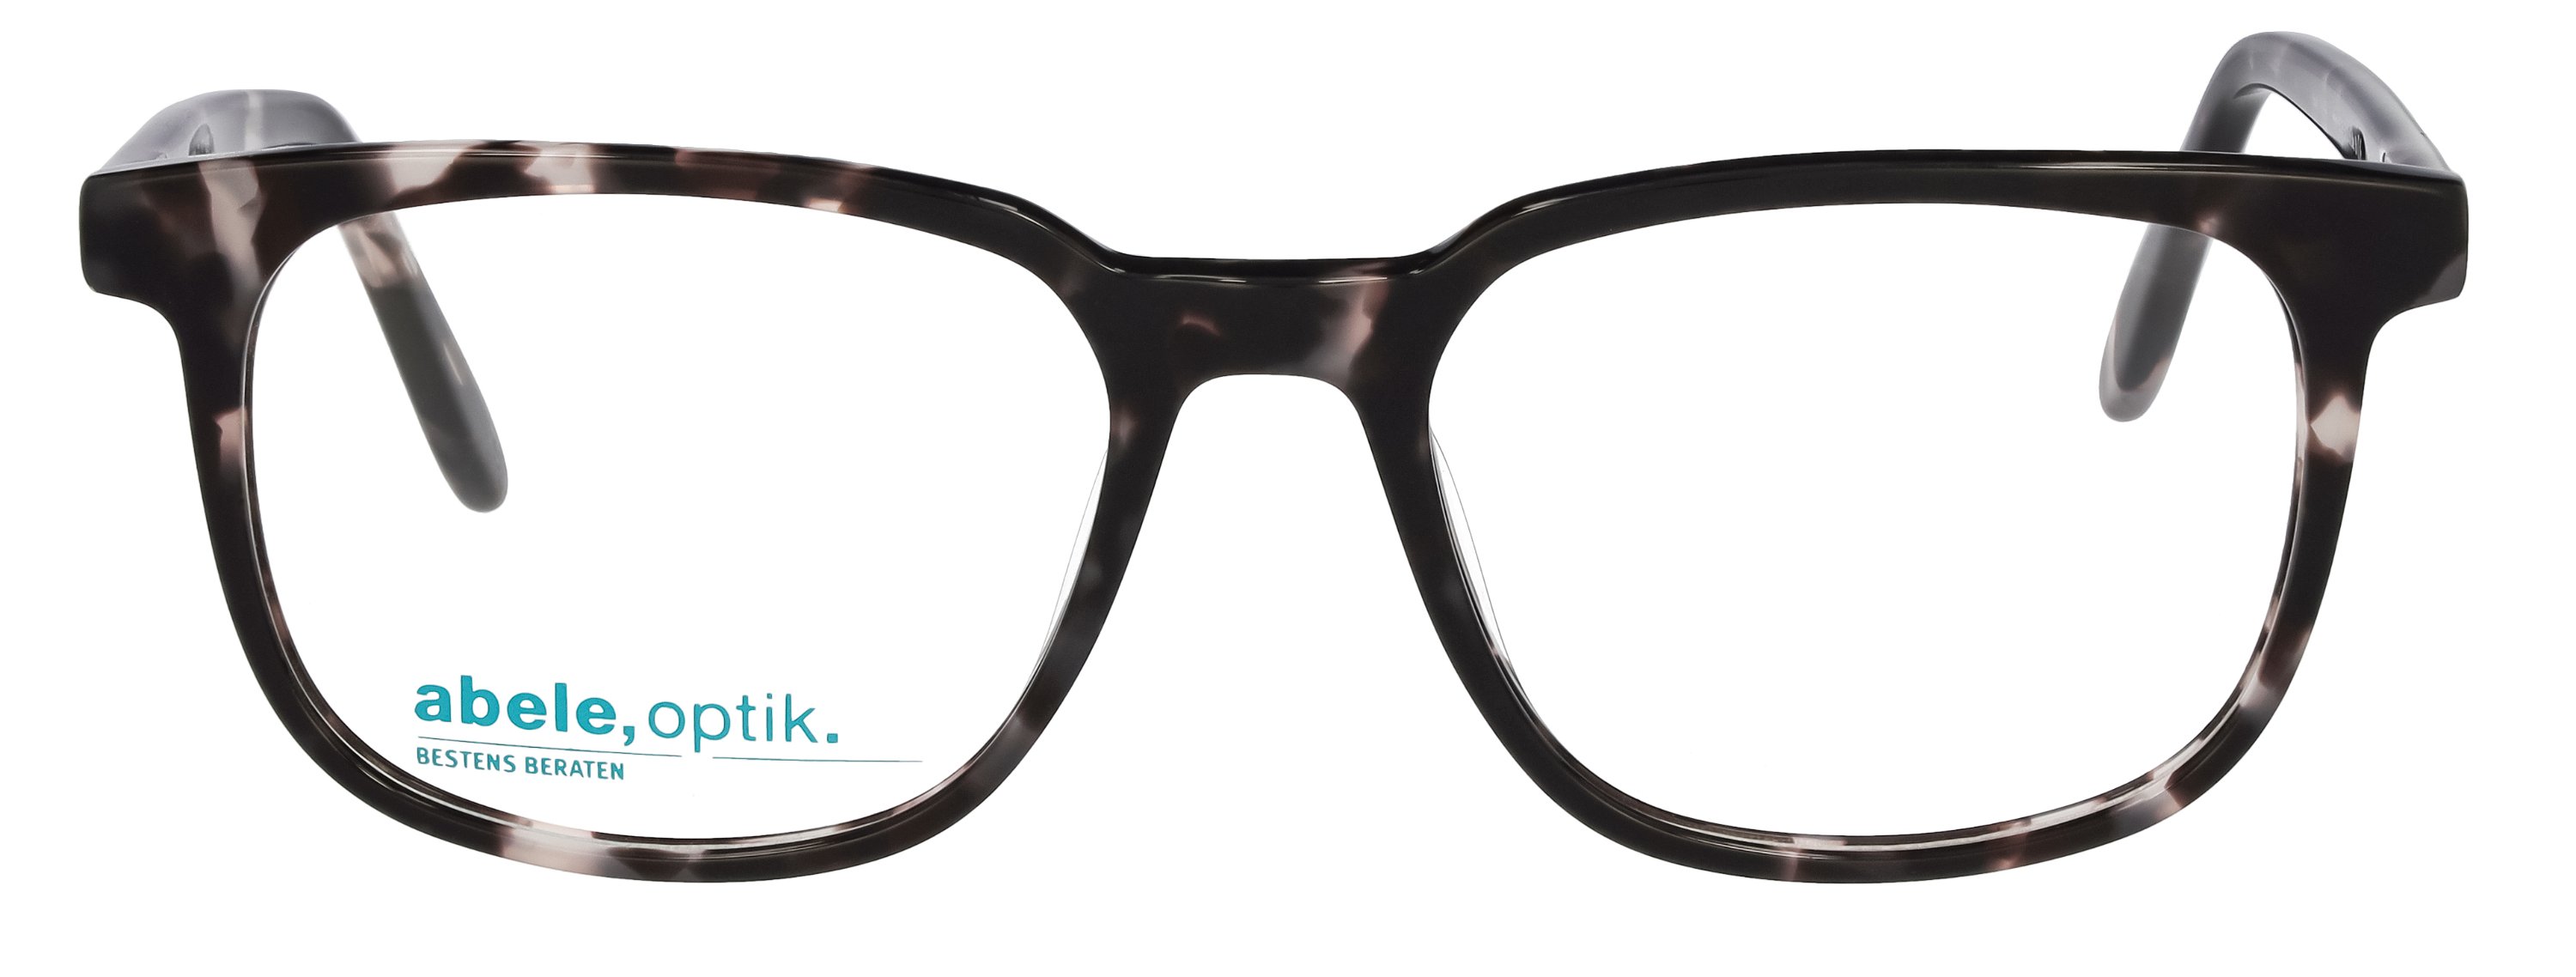 abele optik gemustert braun Brille in für Herren schwarz / 148301